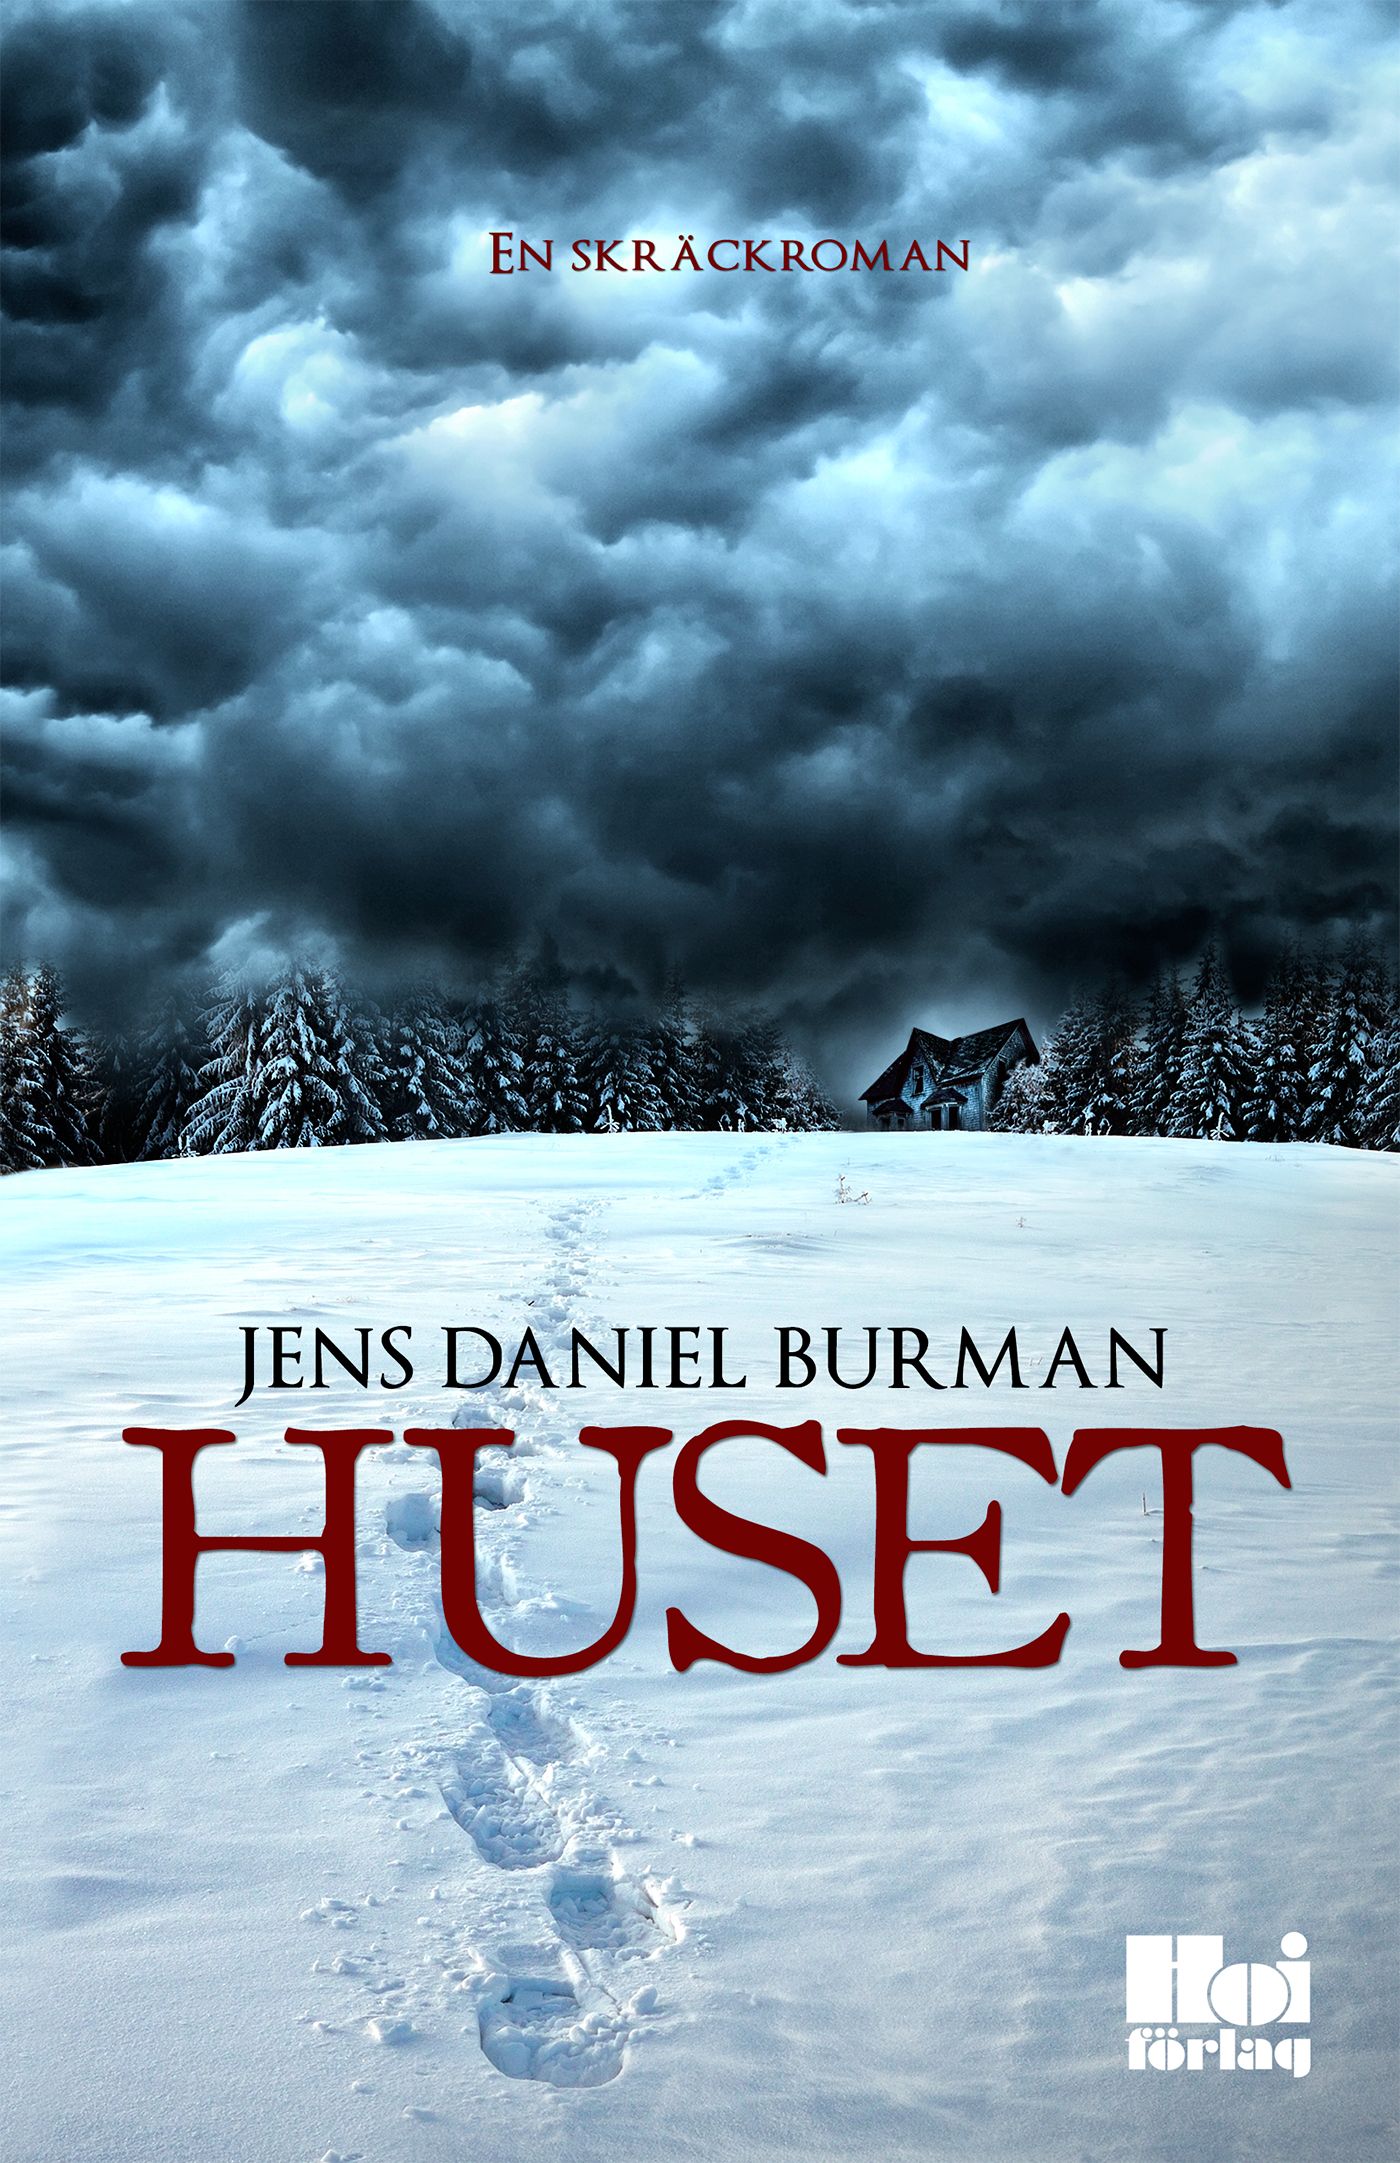 Huset, eBook by Jens Daniel Burman